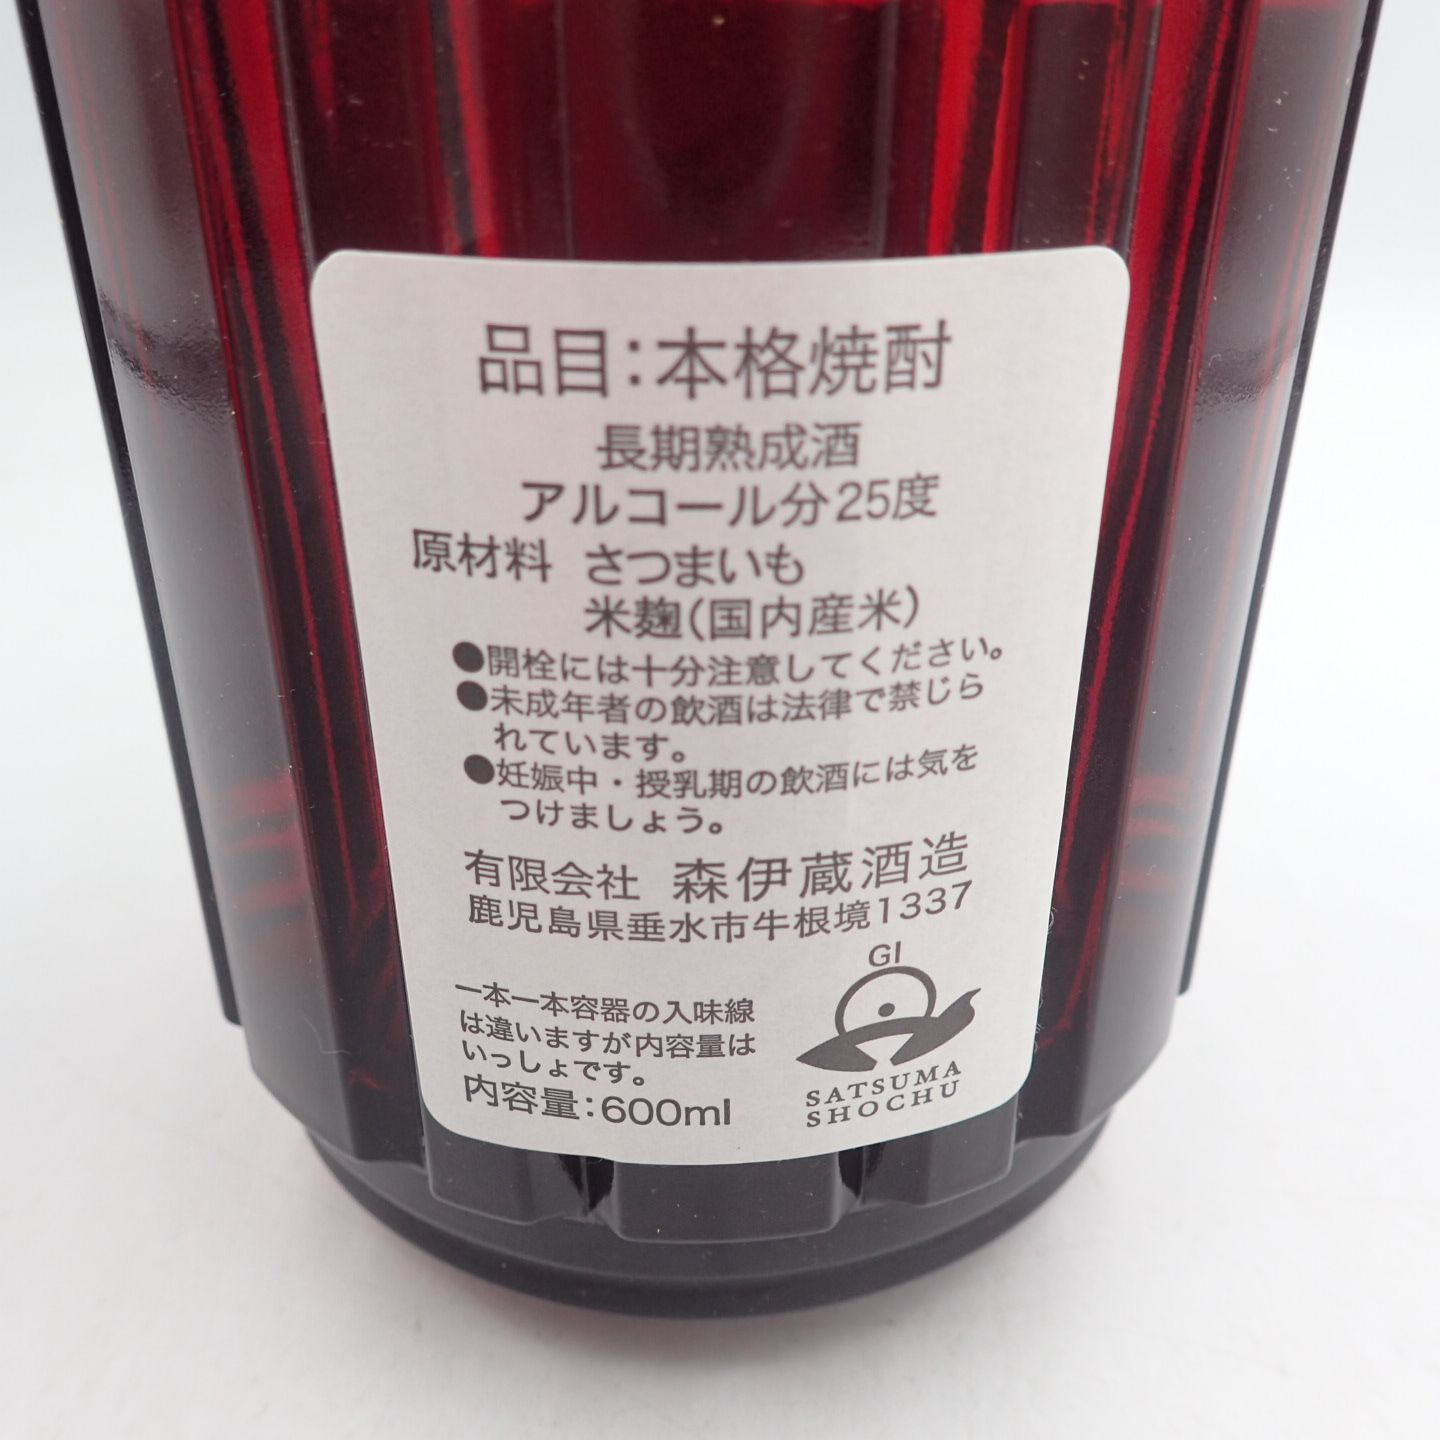 森伊蔵 楽酔喜酒 2007 600ml 25%【U】